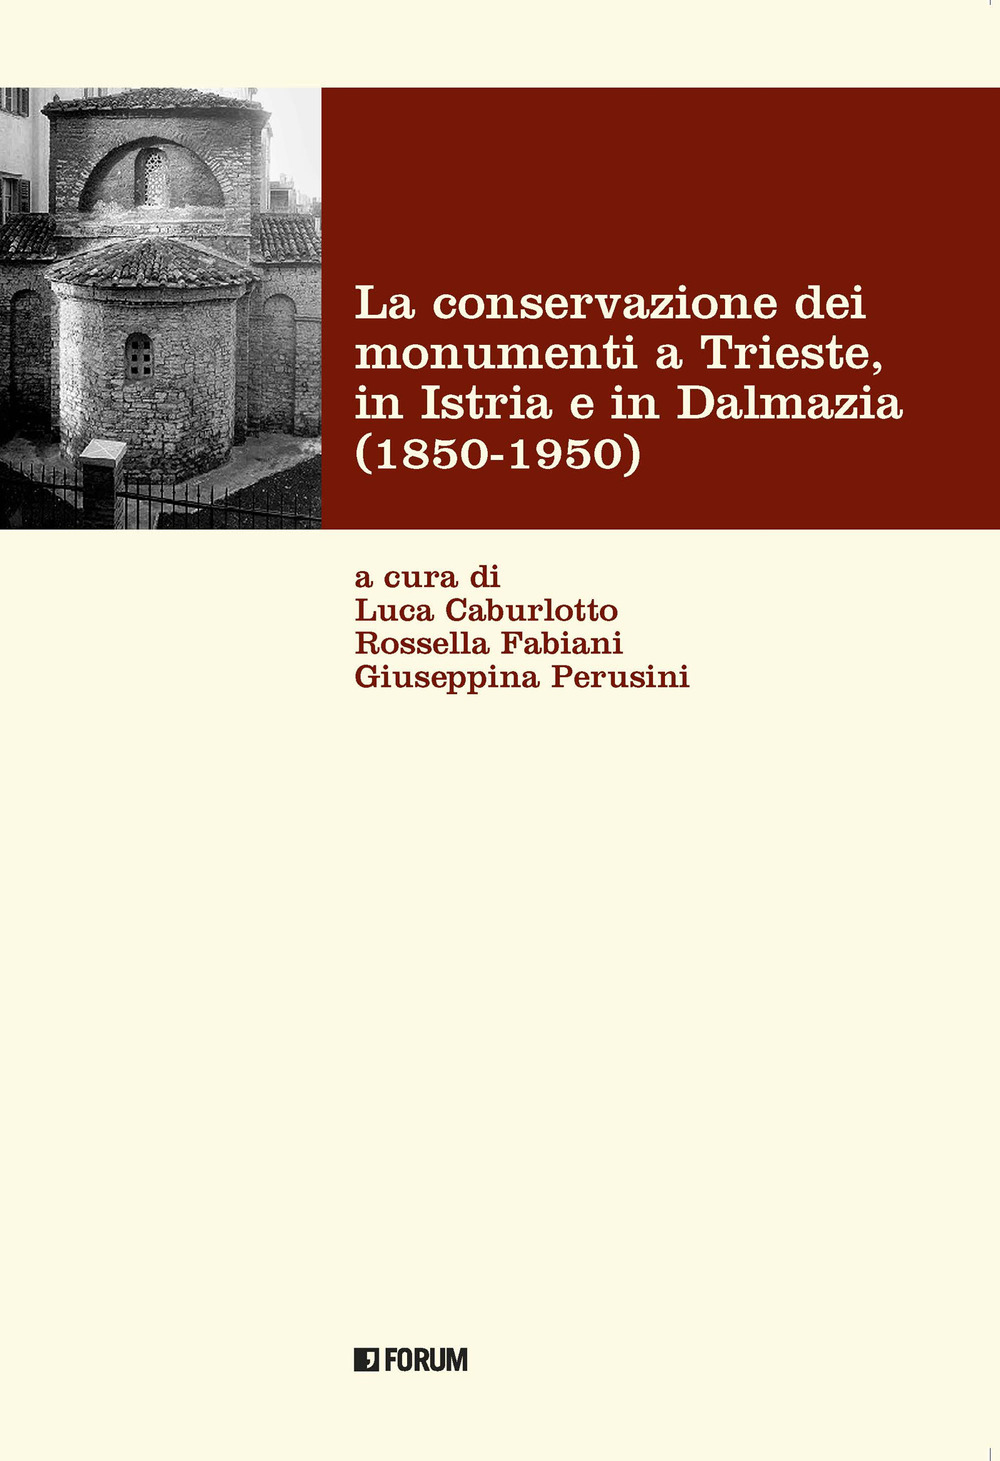 La conservazione dei monumenti a Trieste, in Istria e in Dalmazia 1850-1950